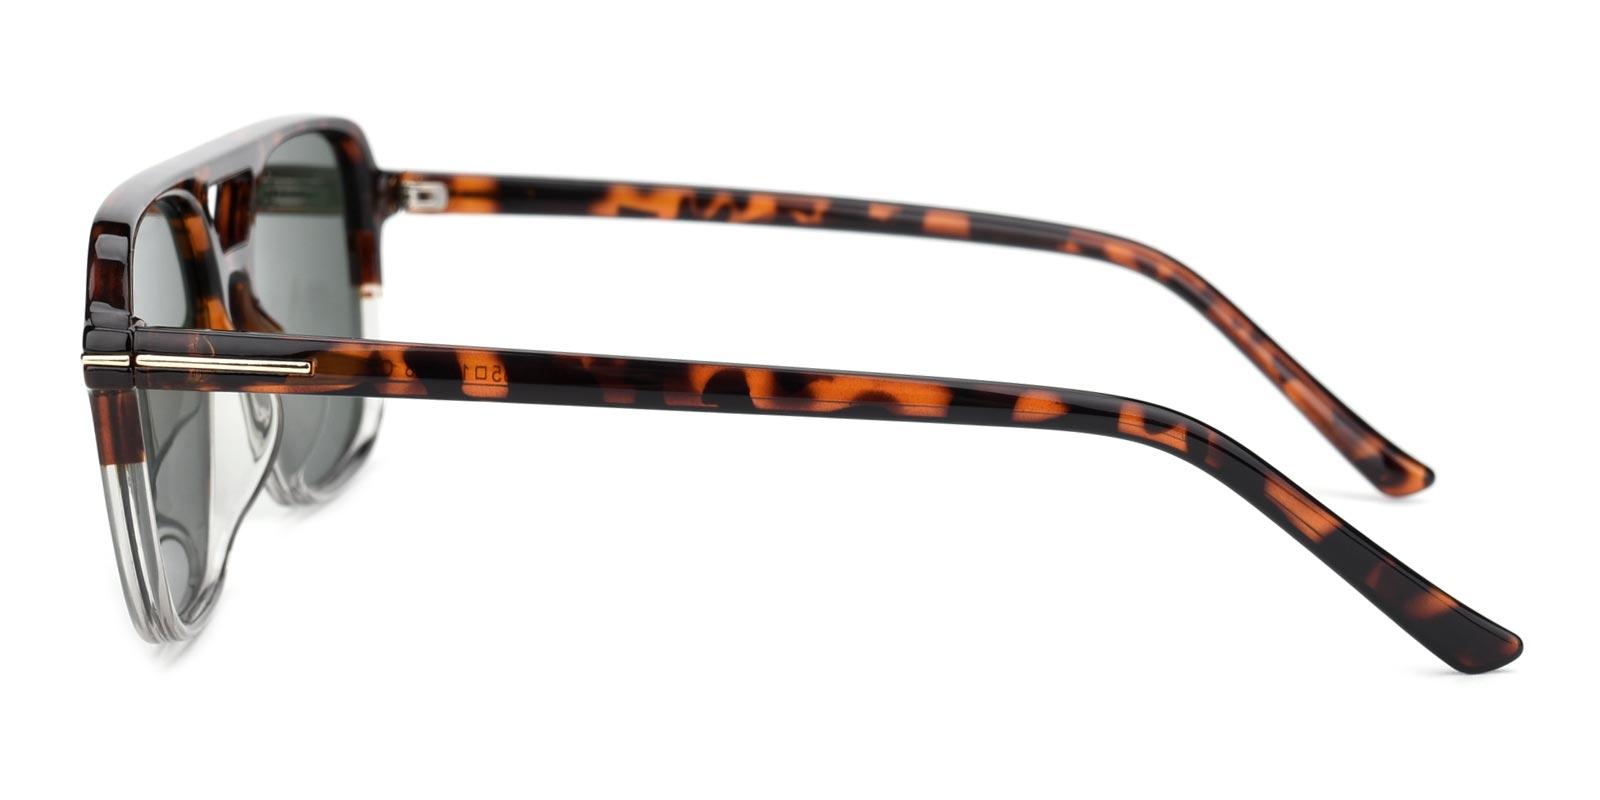 Galaxy Non Prescription Sunglasses-Tortoise-Aviator-TR-Sunglasses-detail